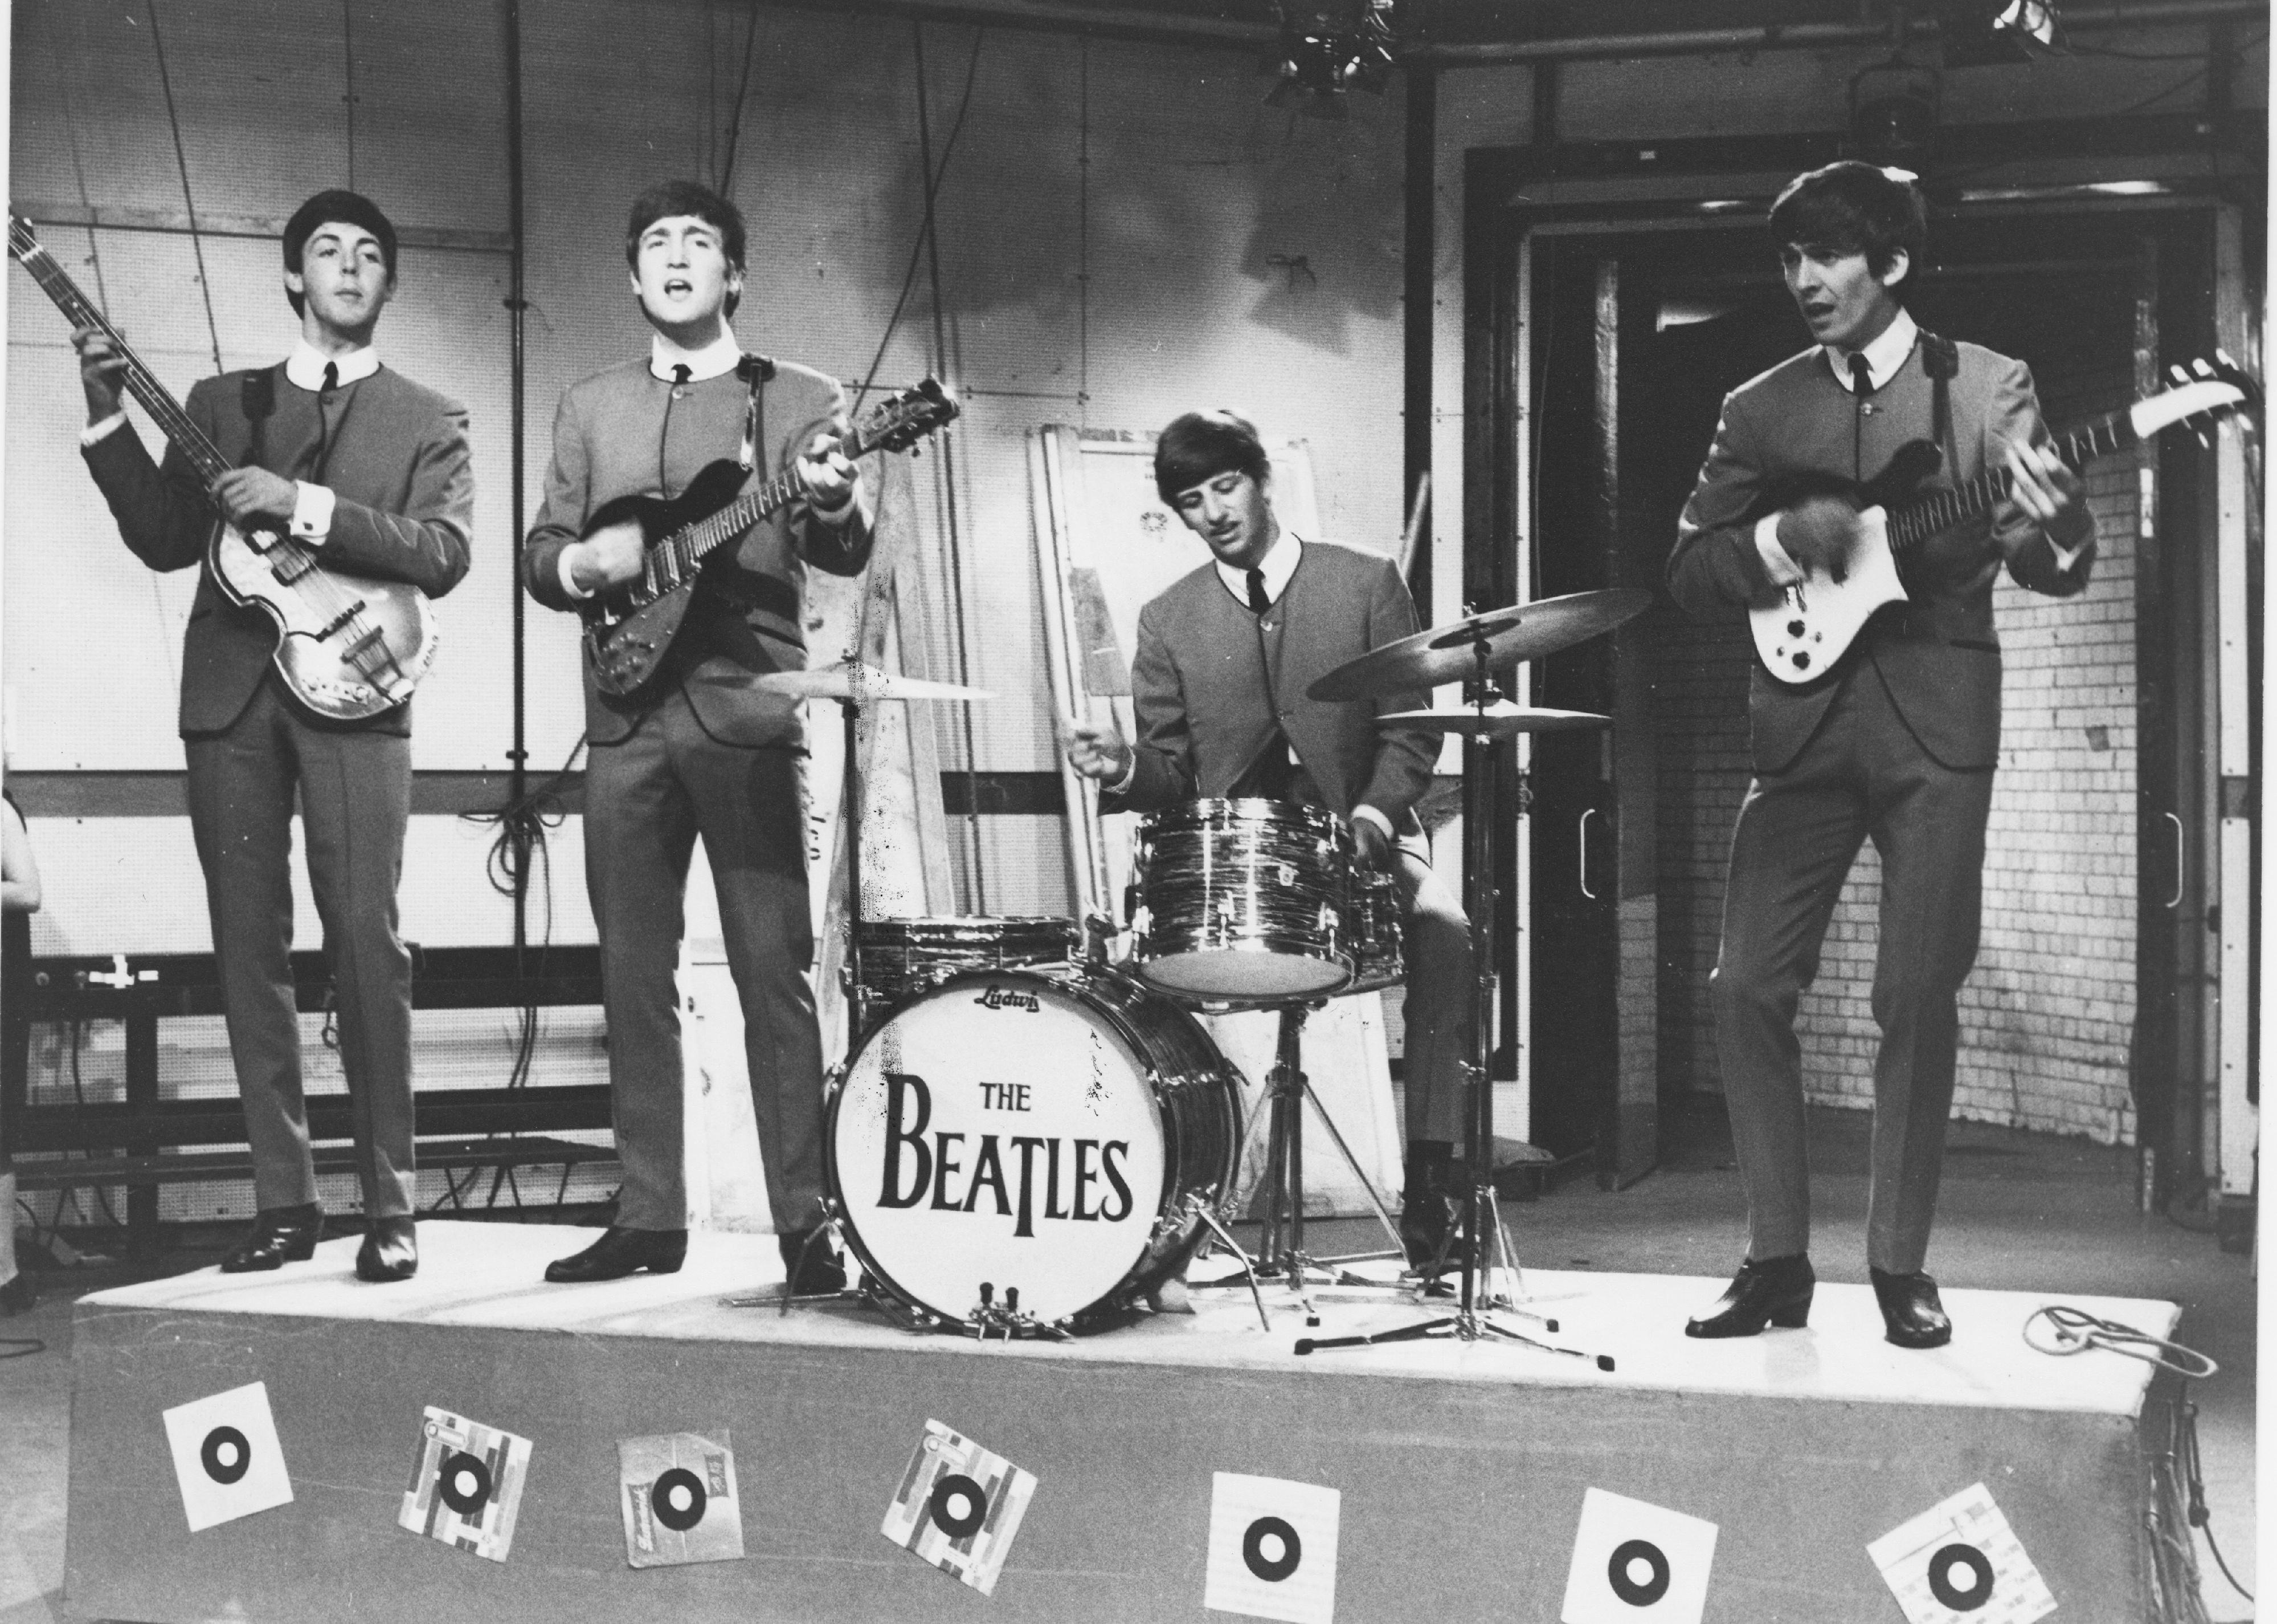 The Beatles on "Ready, Steady, Go!"